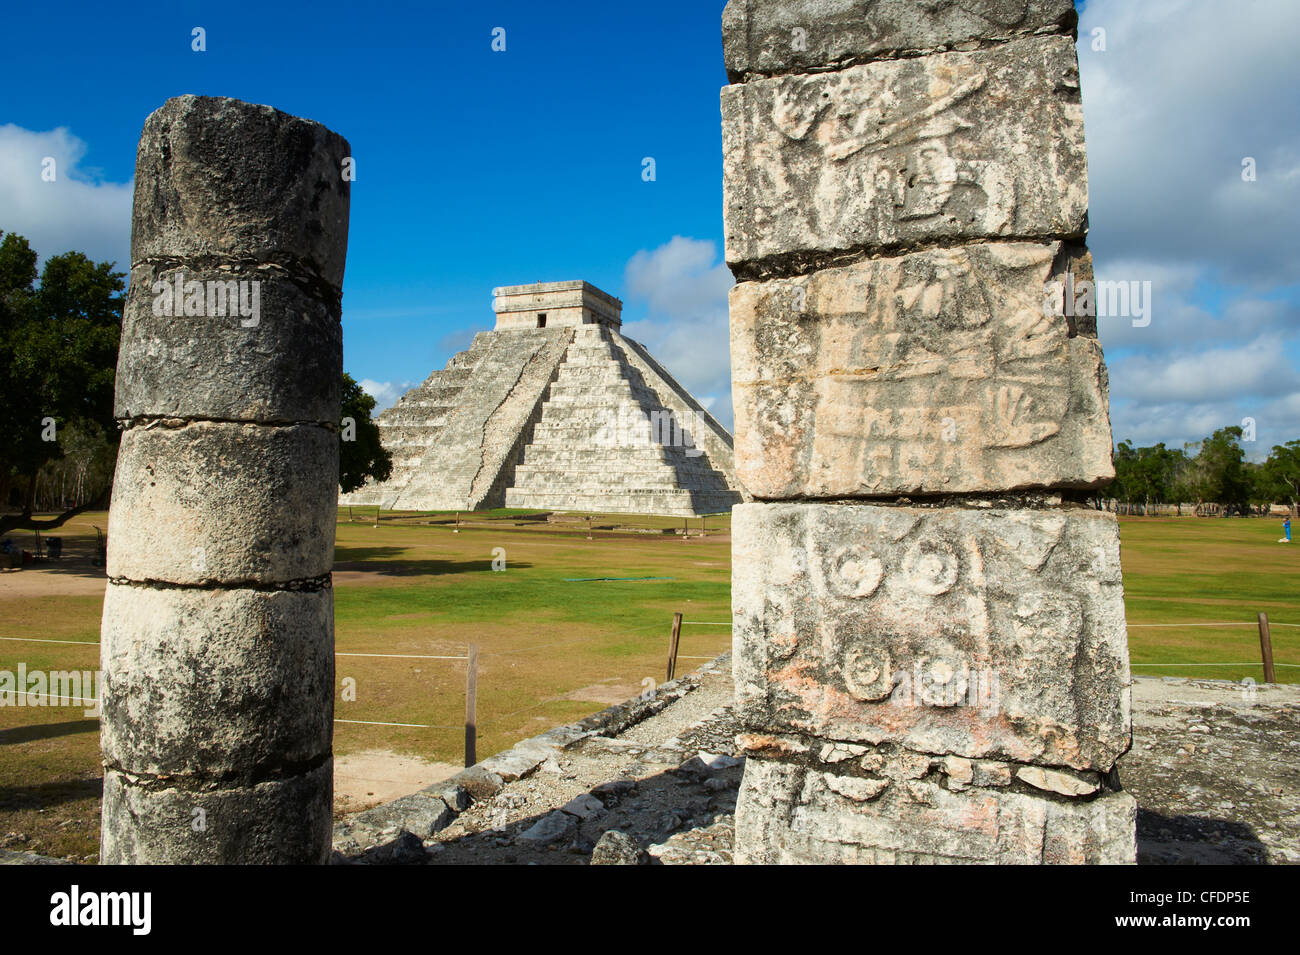 El Castillo pyramide (Temple de Kukulcan) dans les ruines mayas de Chichen Itza, Site du patrimoine mondial de l'UNESCO, Yucatan, Mexique Banque D'Images